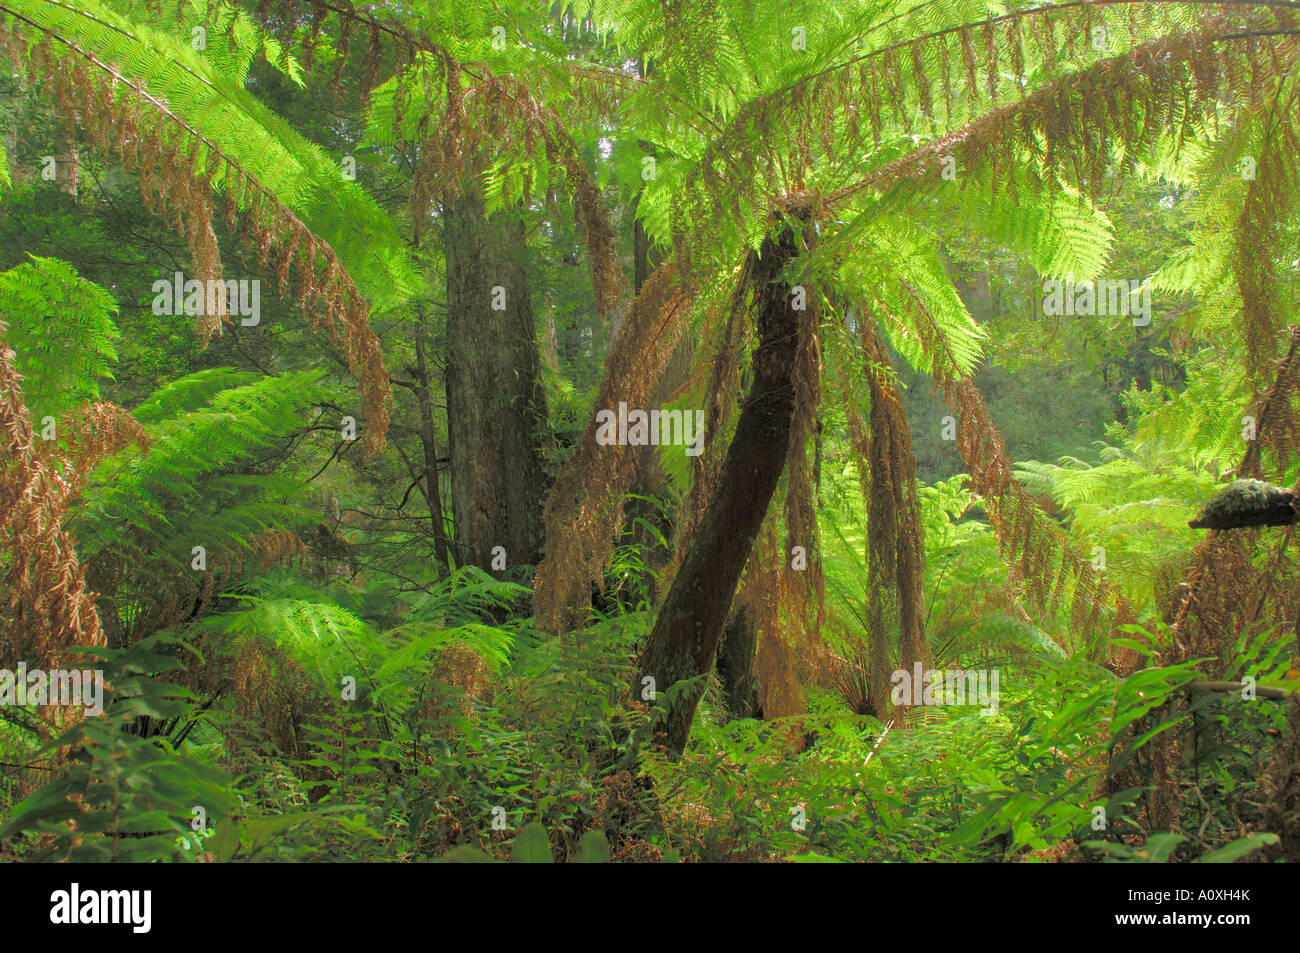 Forêt tropicale avec fern tree, Australie Banque D'Images